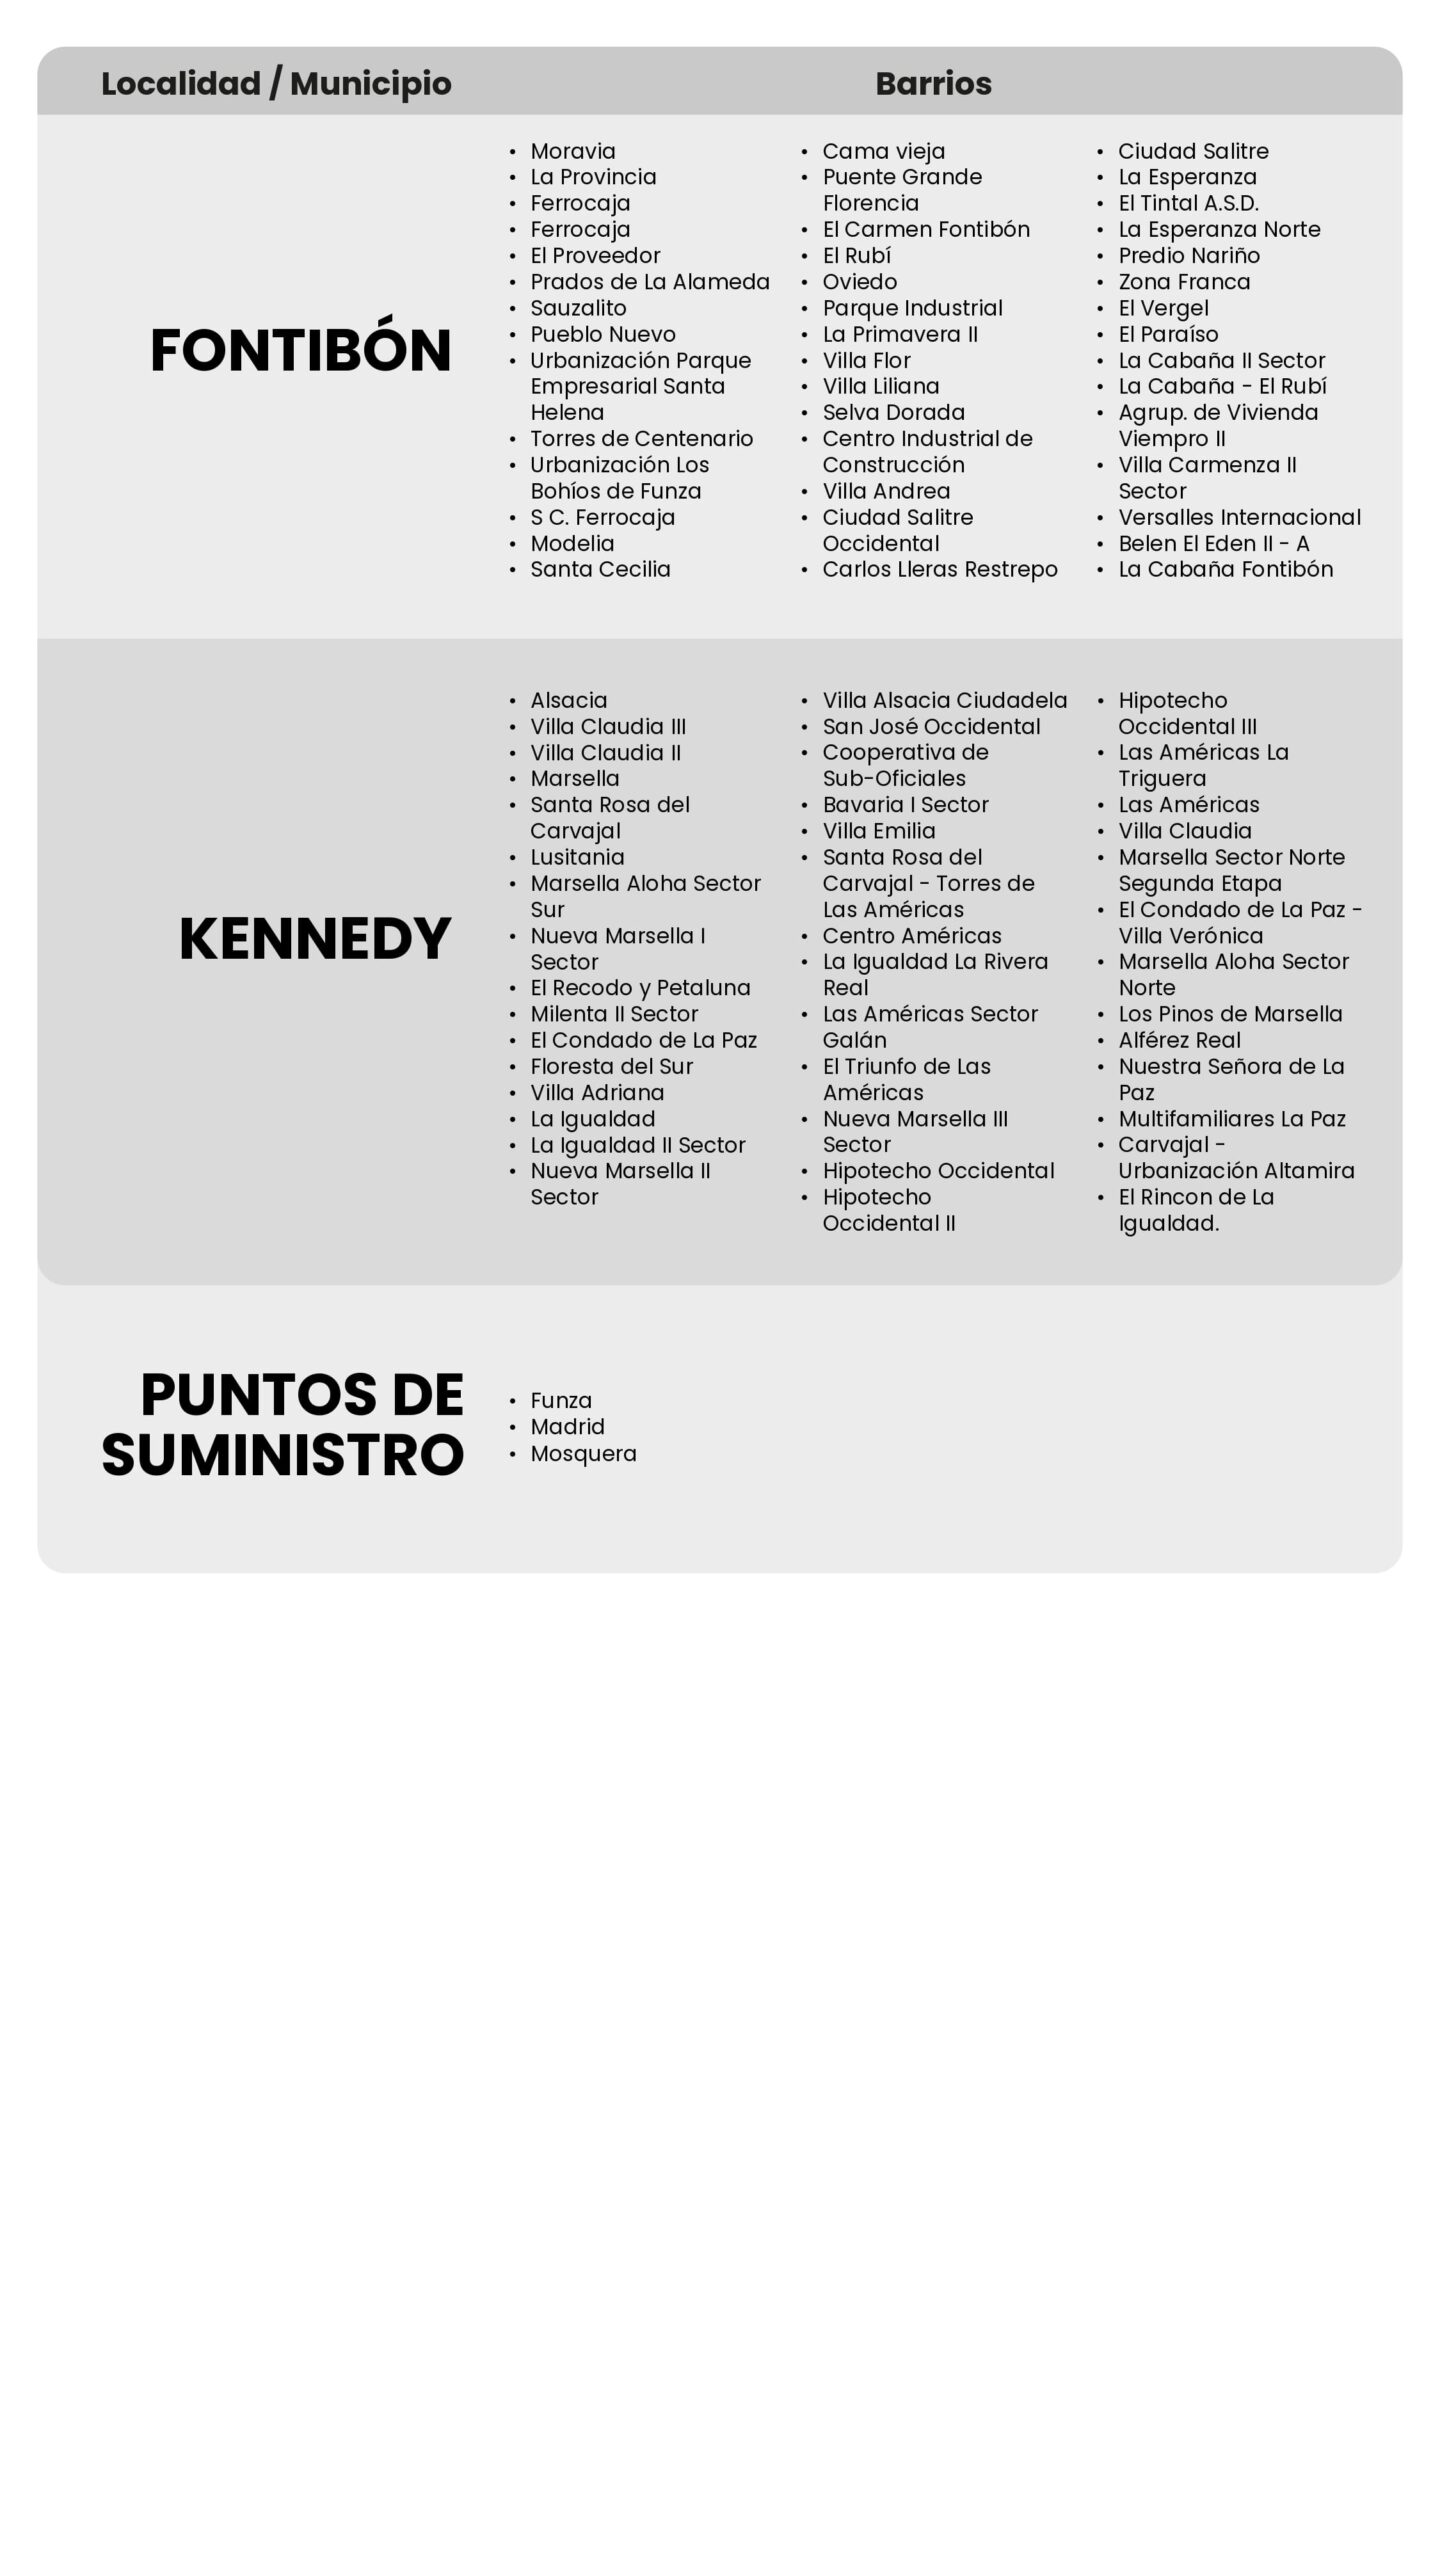 Fontibón, Kennedy, Funza, Madrid y Mosquera: los sectores con cortes de agua en Bogotá programados para este miércoles